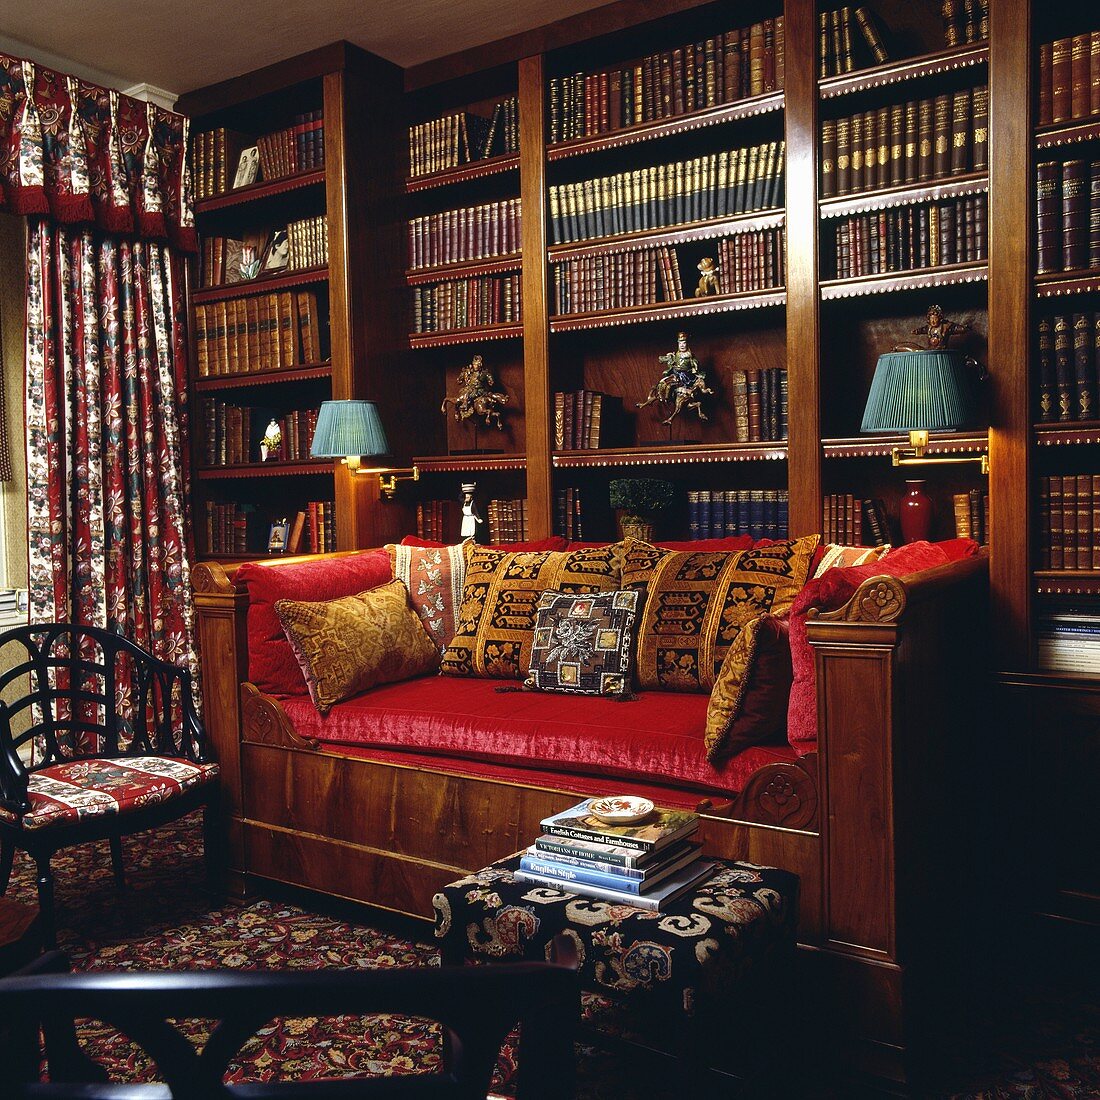 Bibliothek mit rotem Sofa vor einem großen Bücherschrank